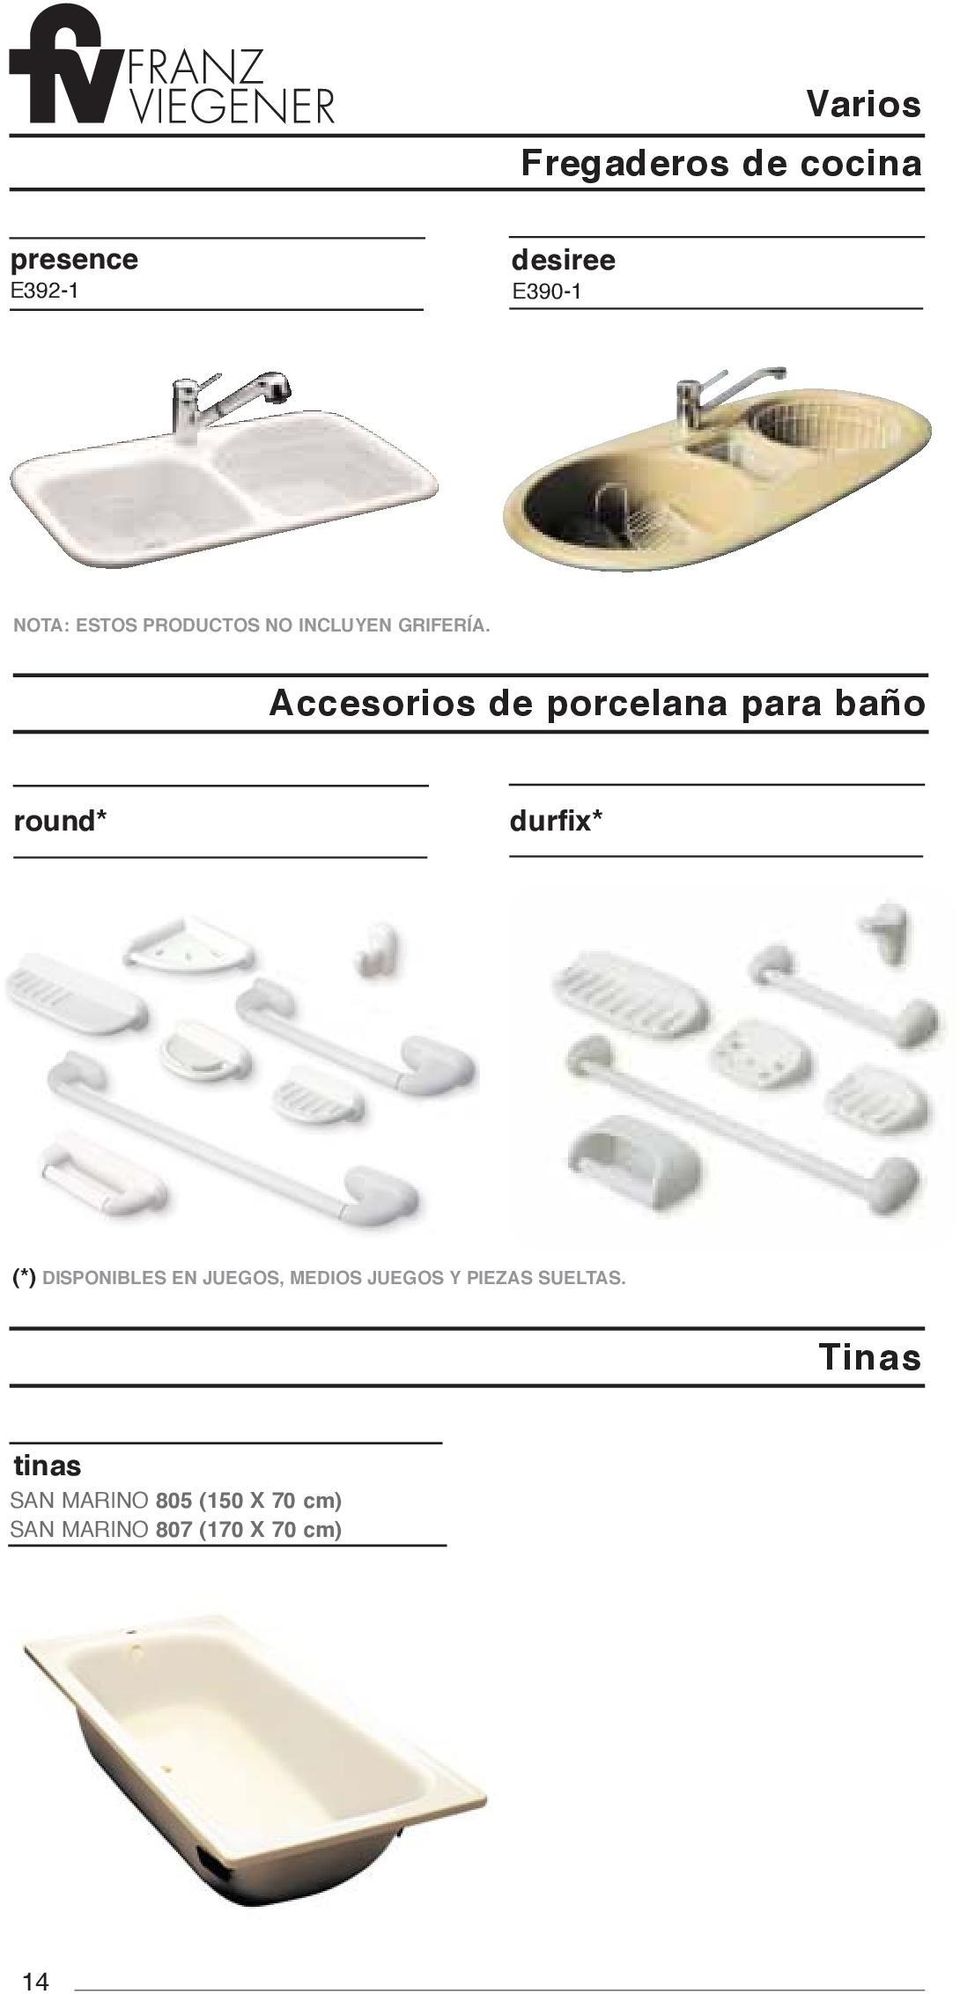 Accesorios de porcelana para baño round* durfix* (*) DISPONIBLES EN